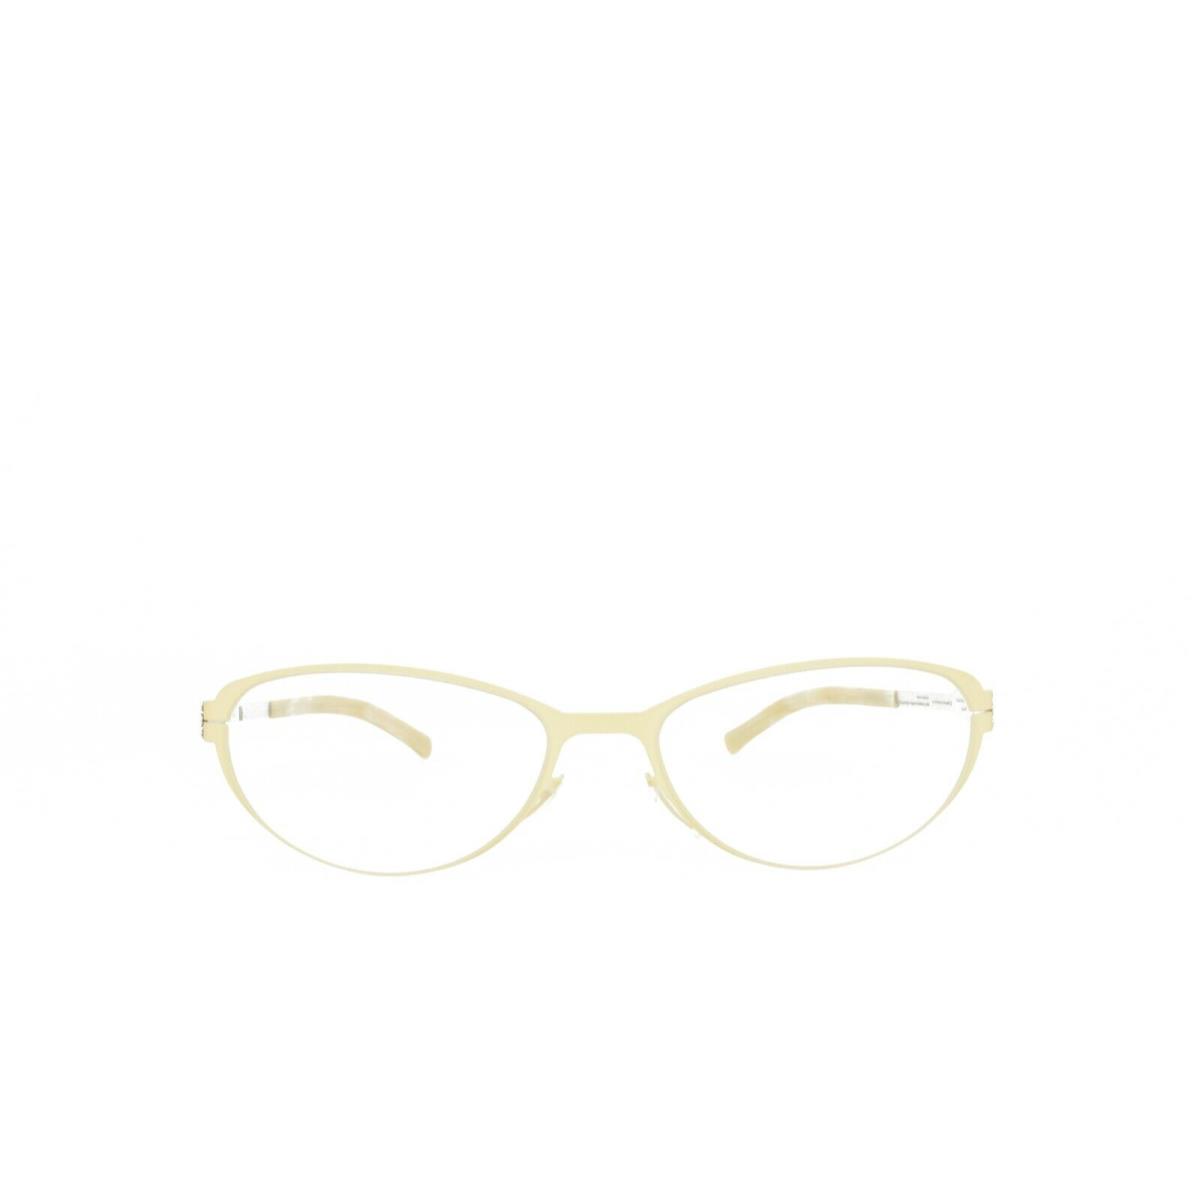 iC Berlin Eyeglasses Rossana P. Eggshell Pearl 53-18-145 - Frame: